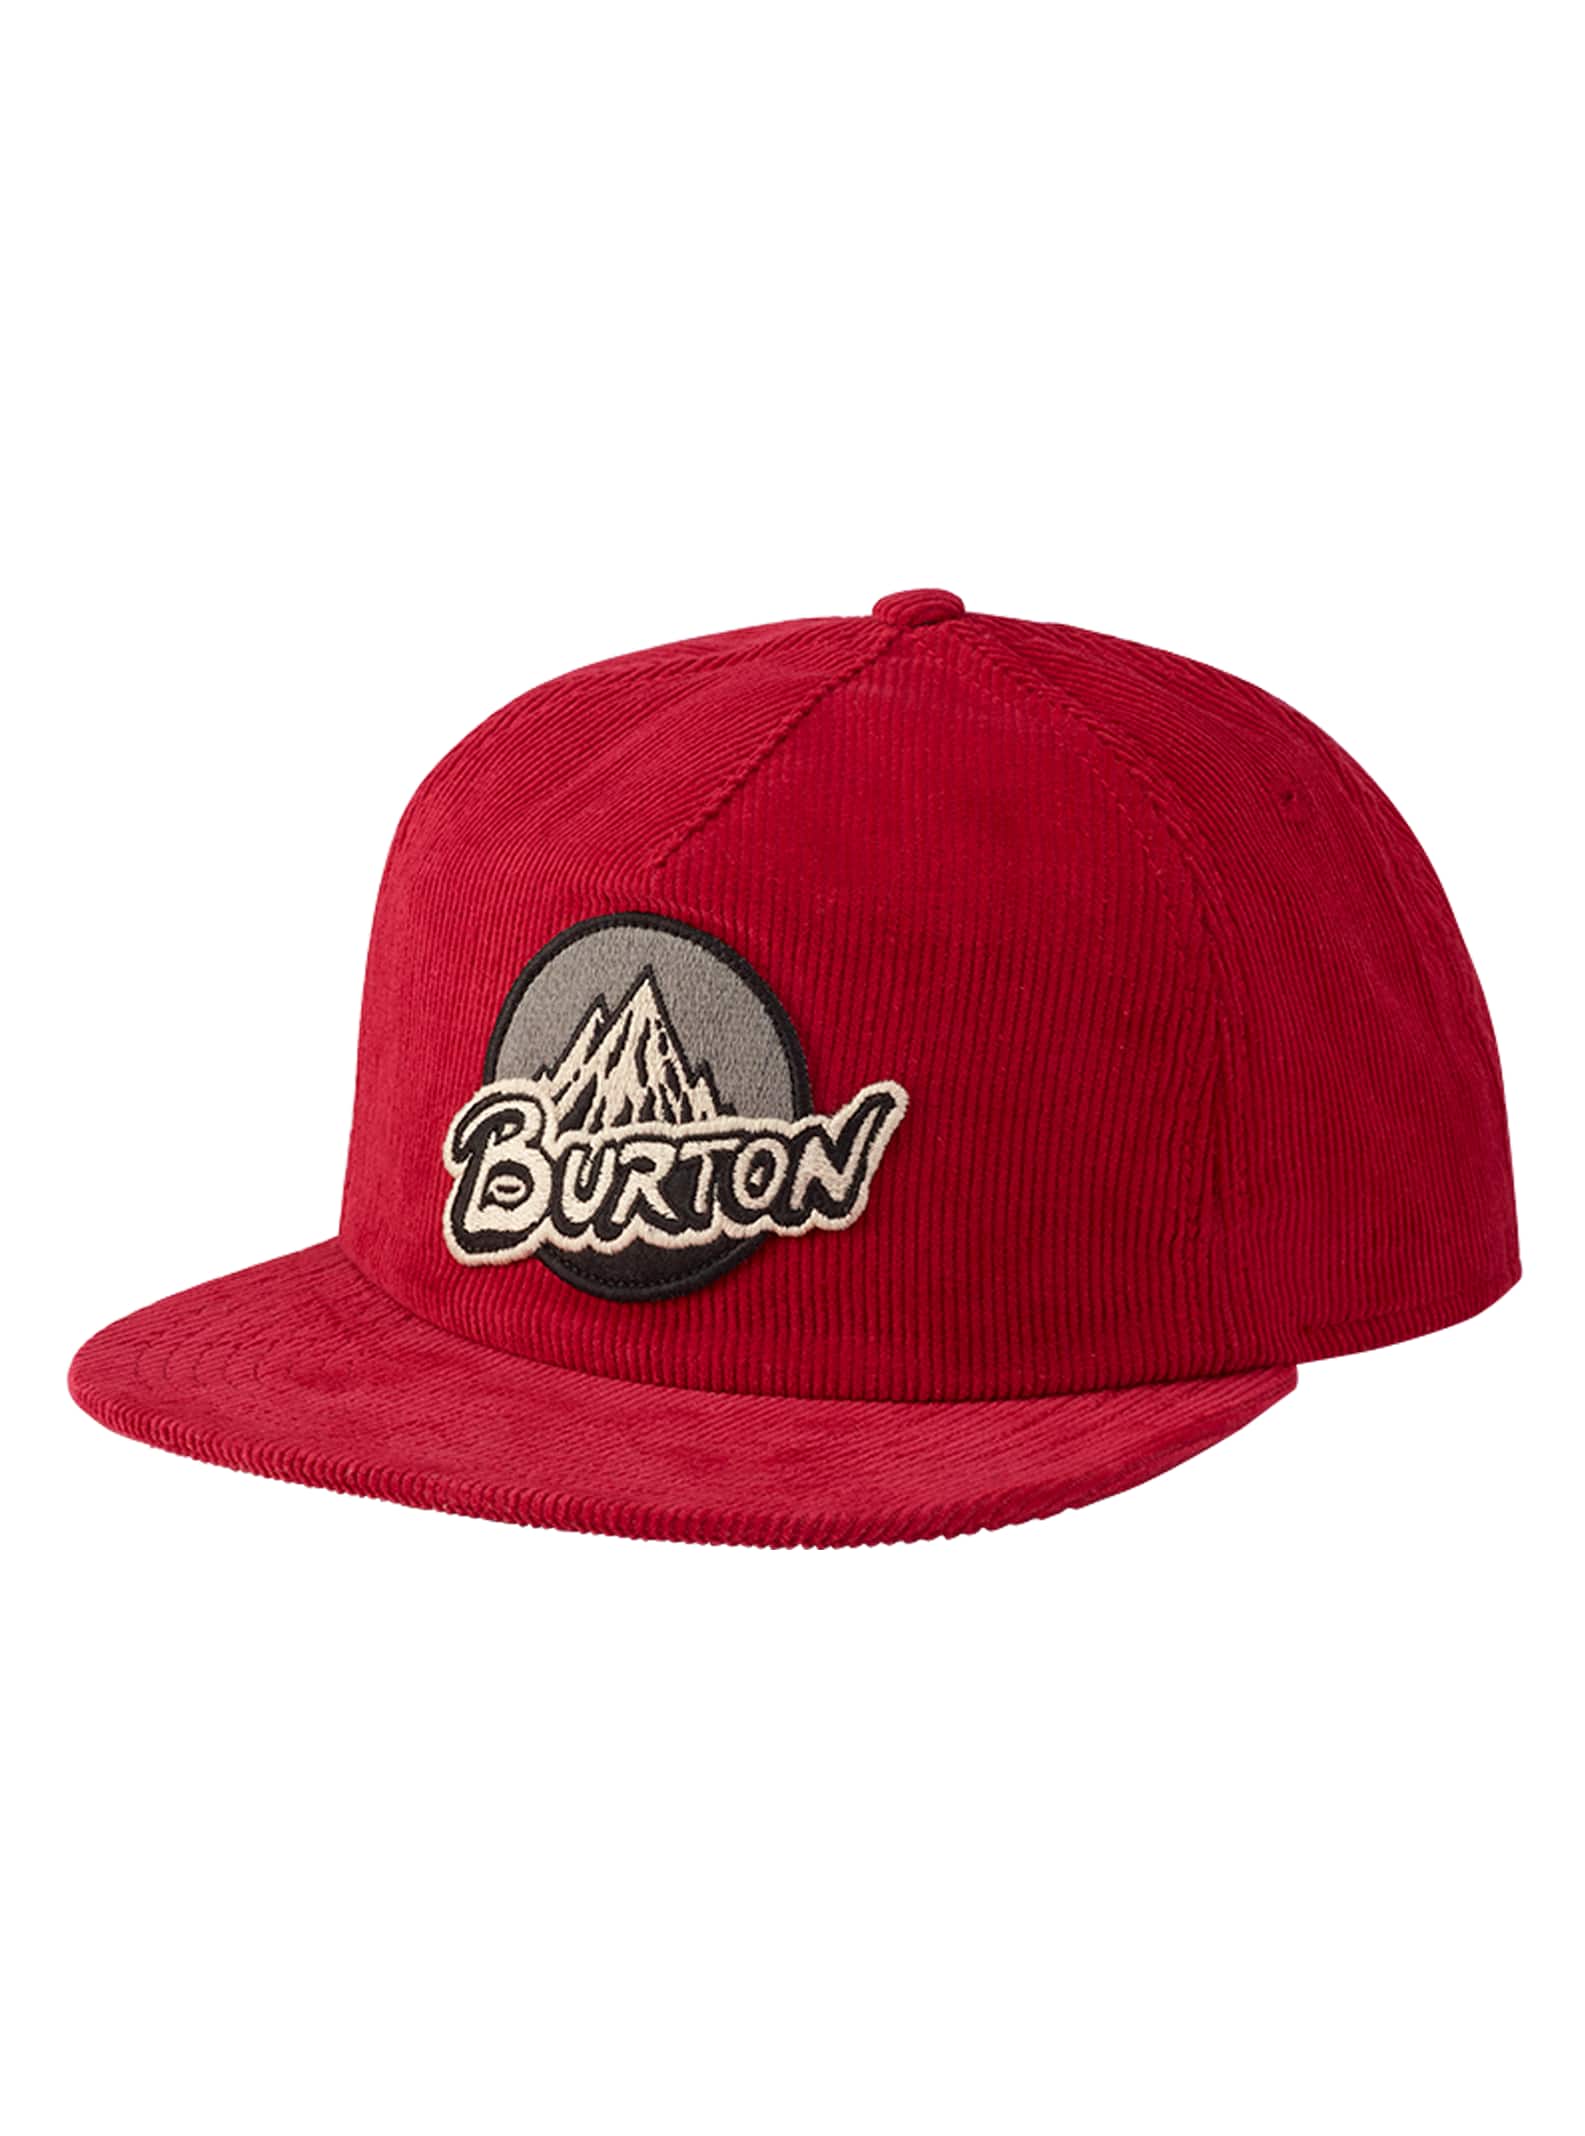 Burton Retro Mountain Snapback Hat | Burton.com Winter 2022 US